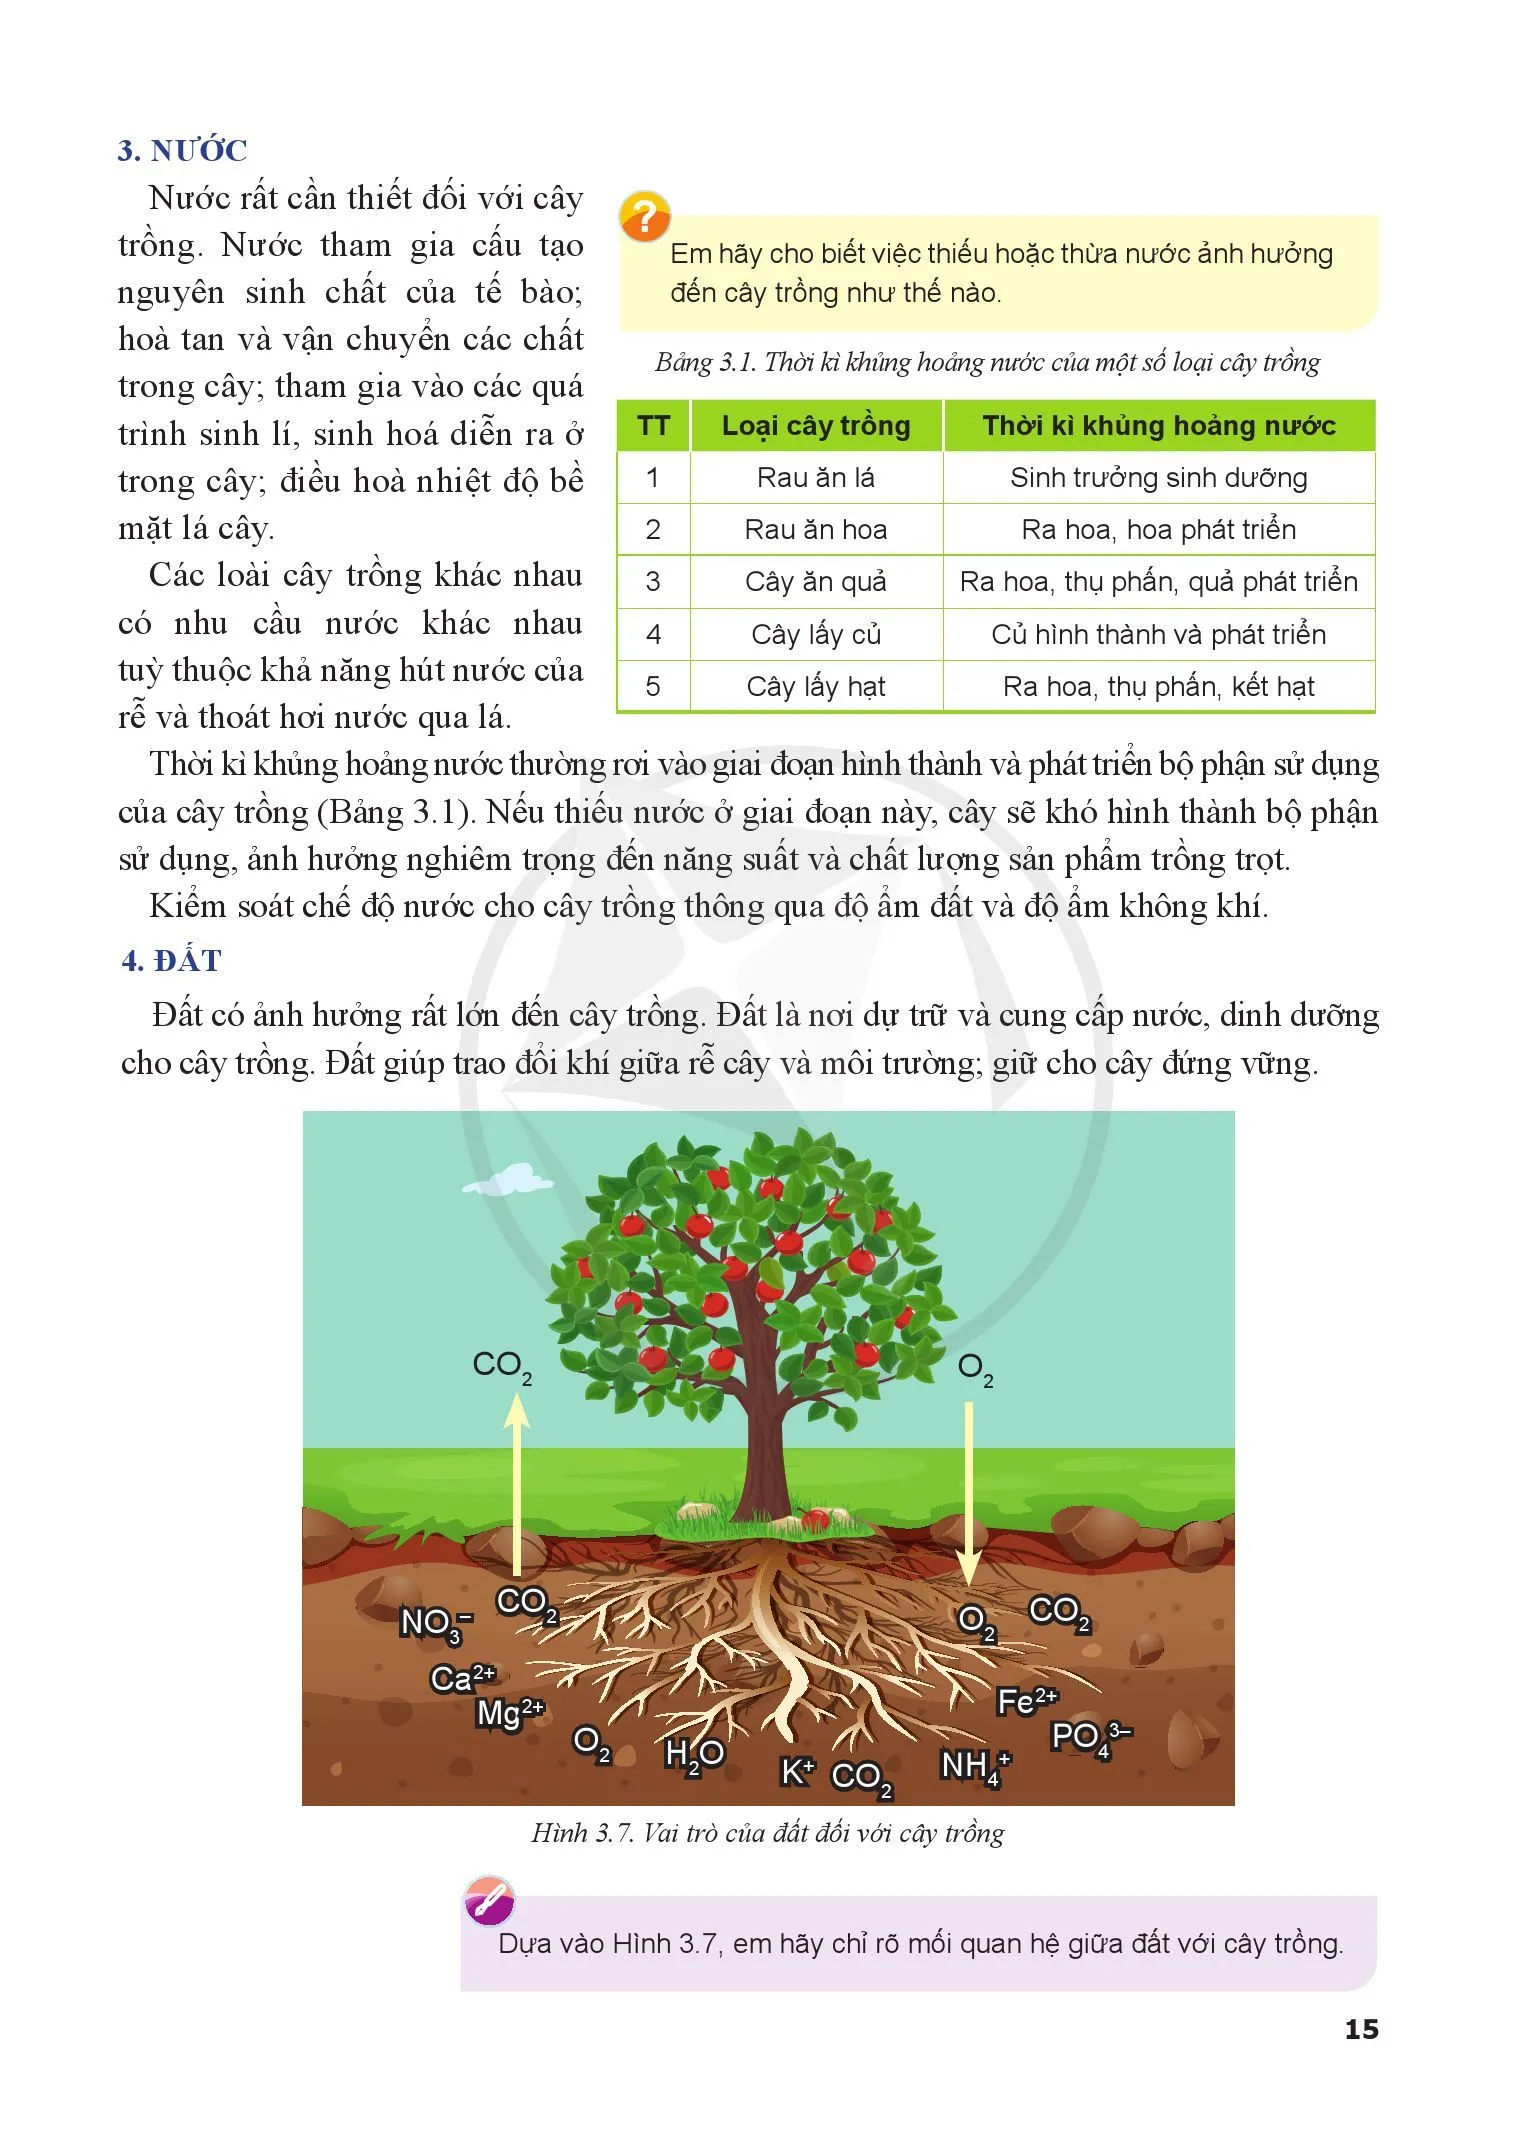 Bài 3. Mối quan hệ giữa cây trồng và các yếu tố chính trong trồng trọt 